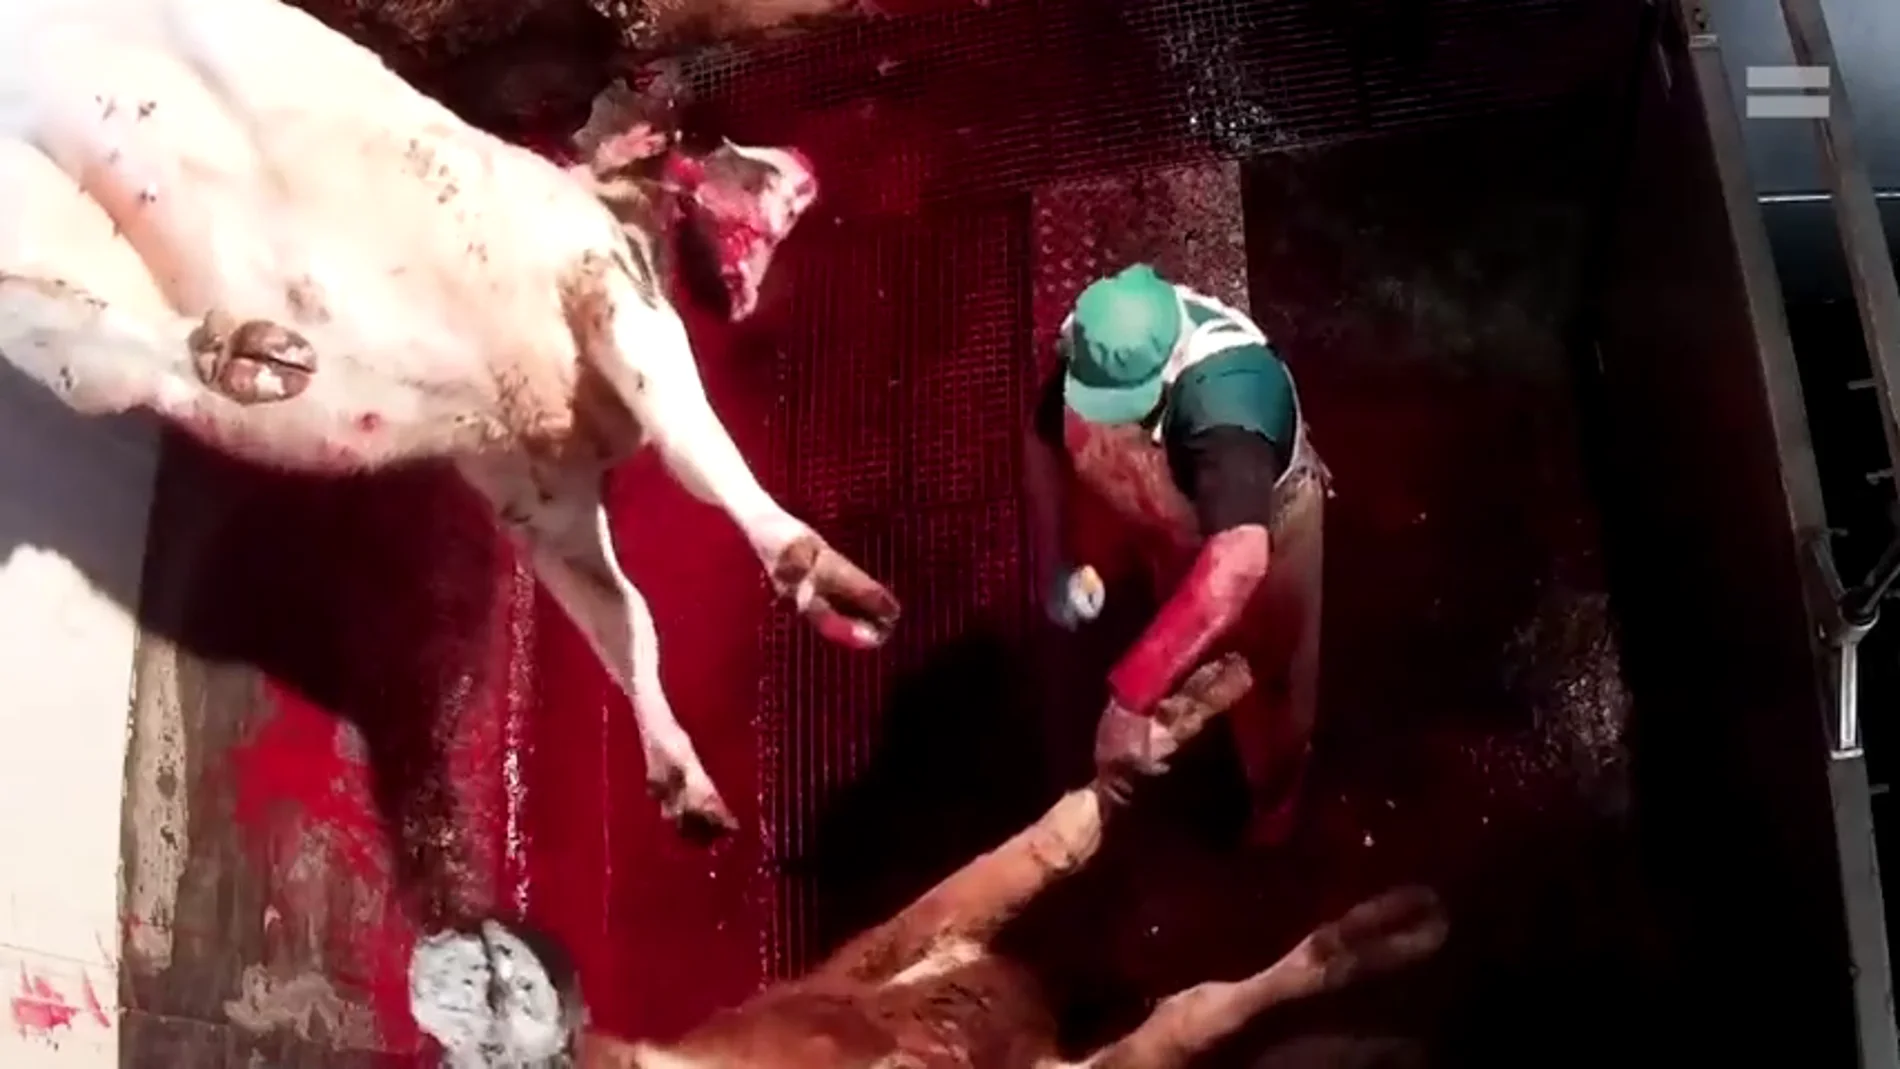 Maltrato animal extremo en un matadero de Ávila: amputan patas y seccionan gargantas sin aturdir